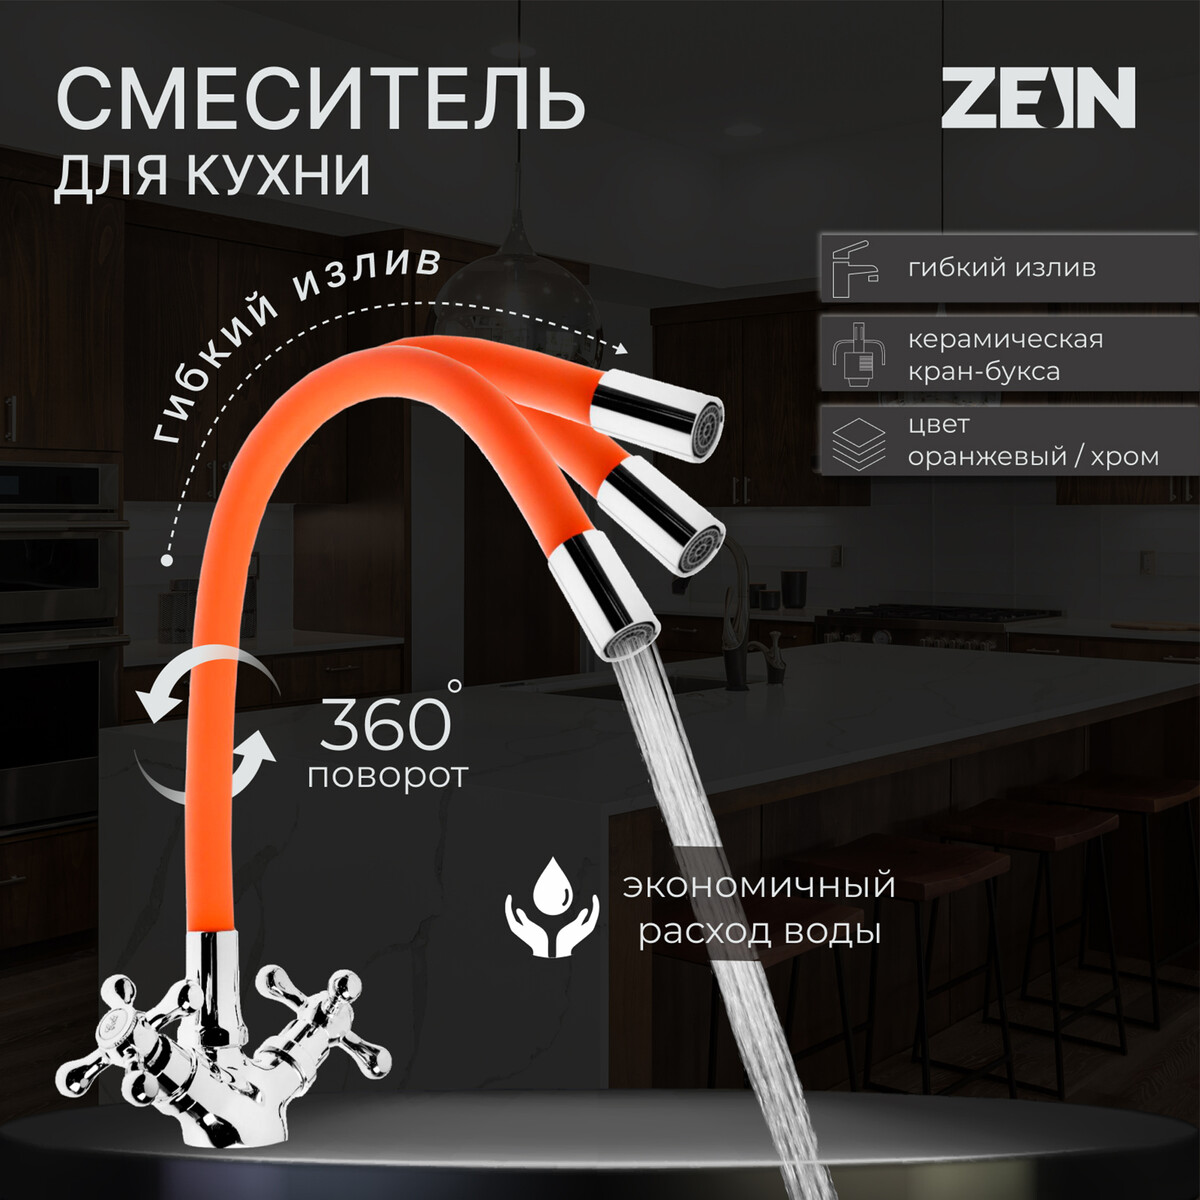 Смеситель для кухни zein z2107, двухвентильный, силиконовый излив, оранжевый/хром смеситель для кухни rossinka с картриджем белый хром w35 23